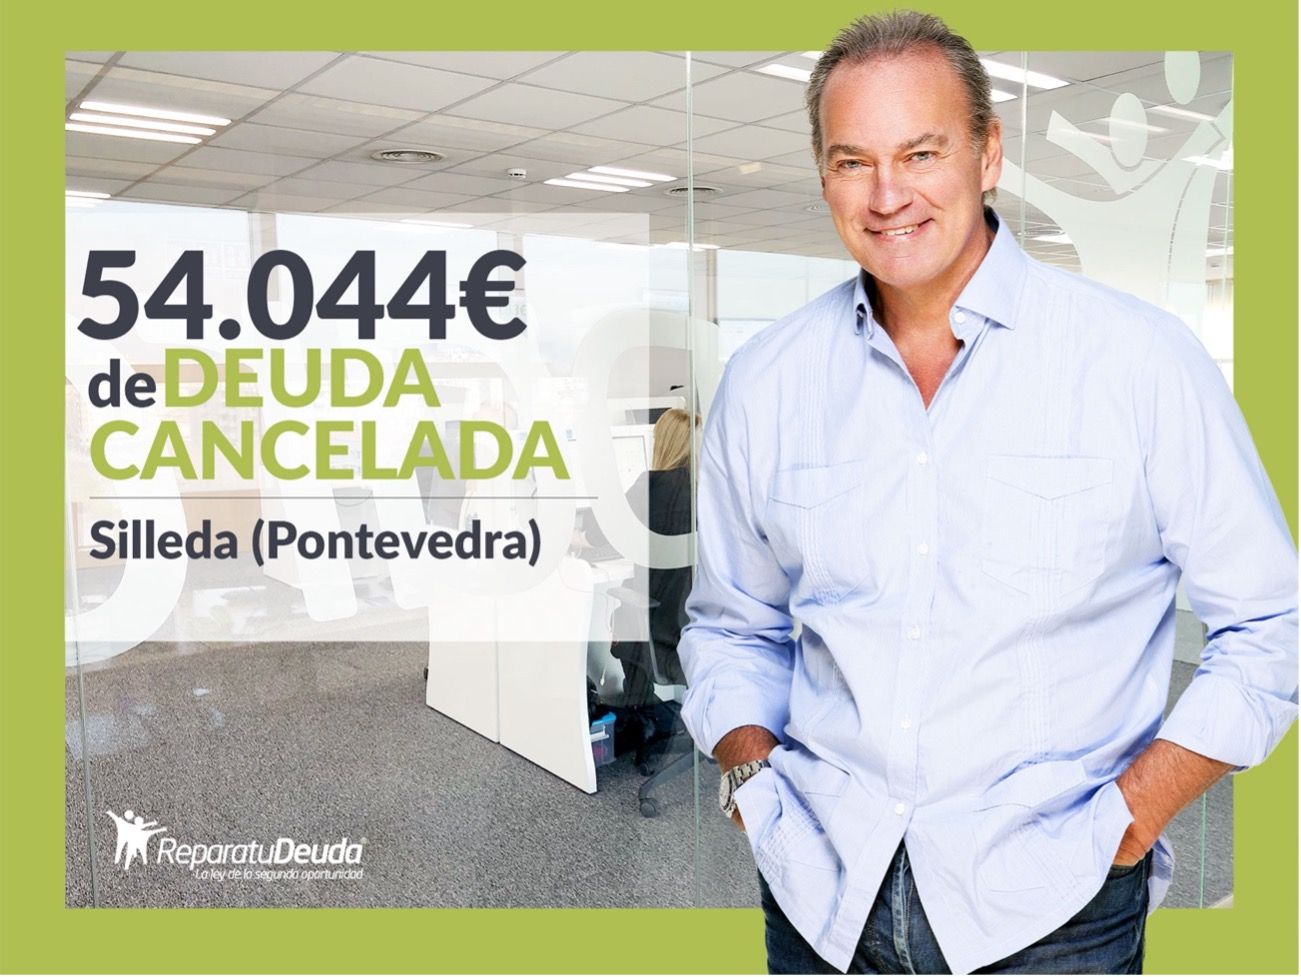 Repara Tu Deuda Abogados Cancela 54.044? En Silleda (Pontevedra) Con La Ley De Segunda Oportunidad